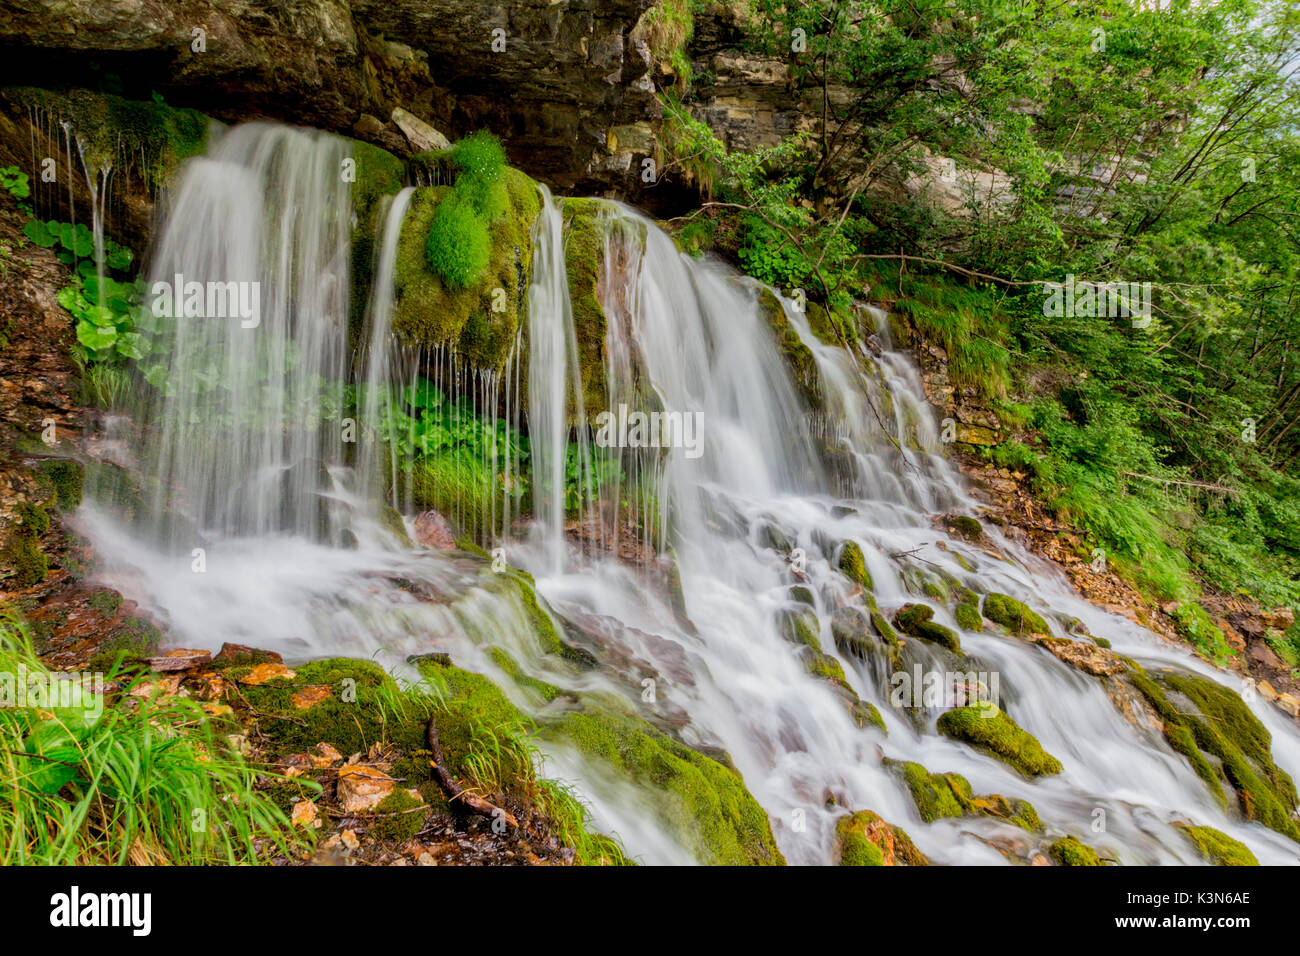 Ephemere Wasserfall im Tal von San Lucano, Agordino, Dolomiten. Das Wasser scheint aus dem Herzen der Berge zu fließen. Rund um das grüne Moos und Pflanzen Merkmal von Feuchtgebieten. Stockfoto